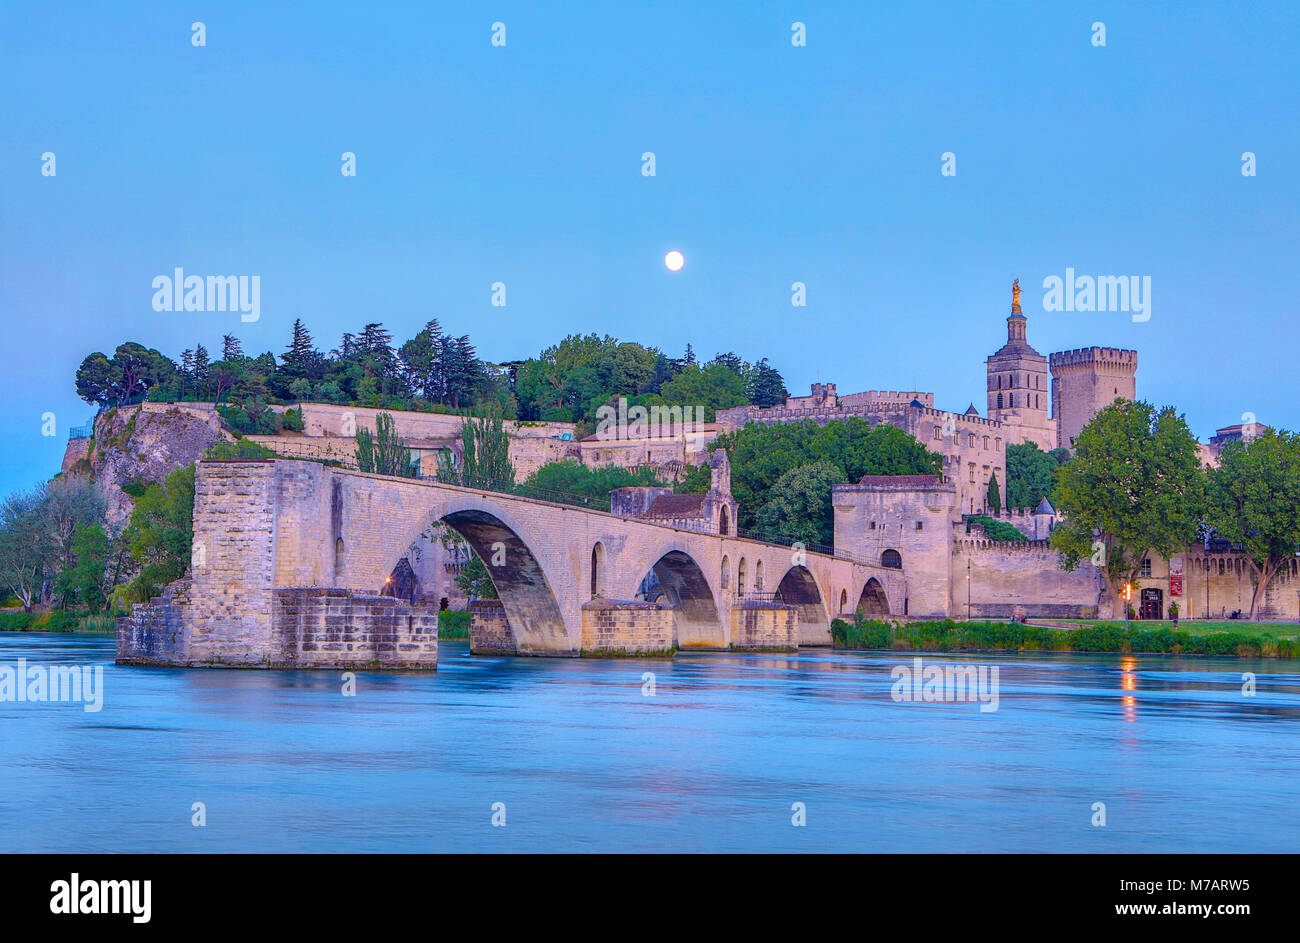 Francia, regione della Provenza, città di Avignone, il Palazzo dei Papi ,SAN Benezet bridge, Rhone river al chiaro di luna Foto Stock